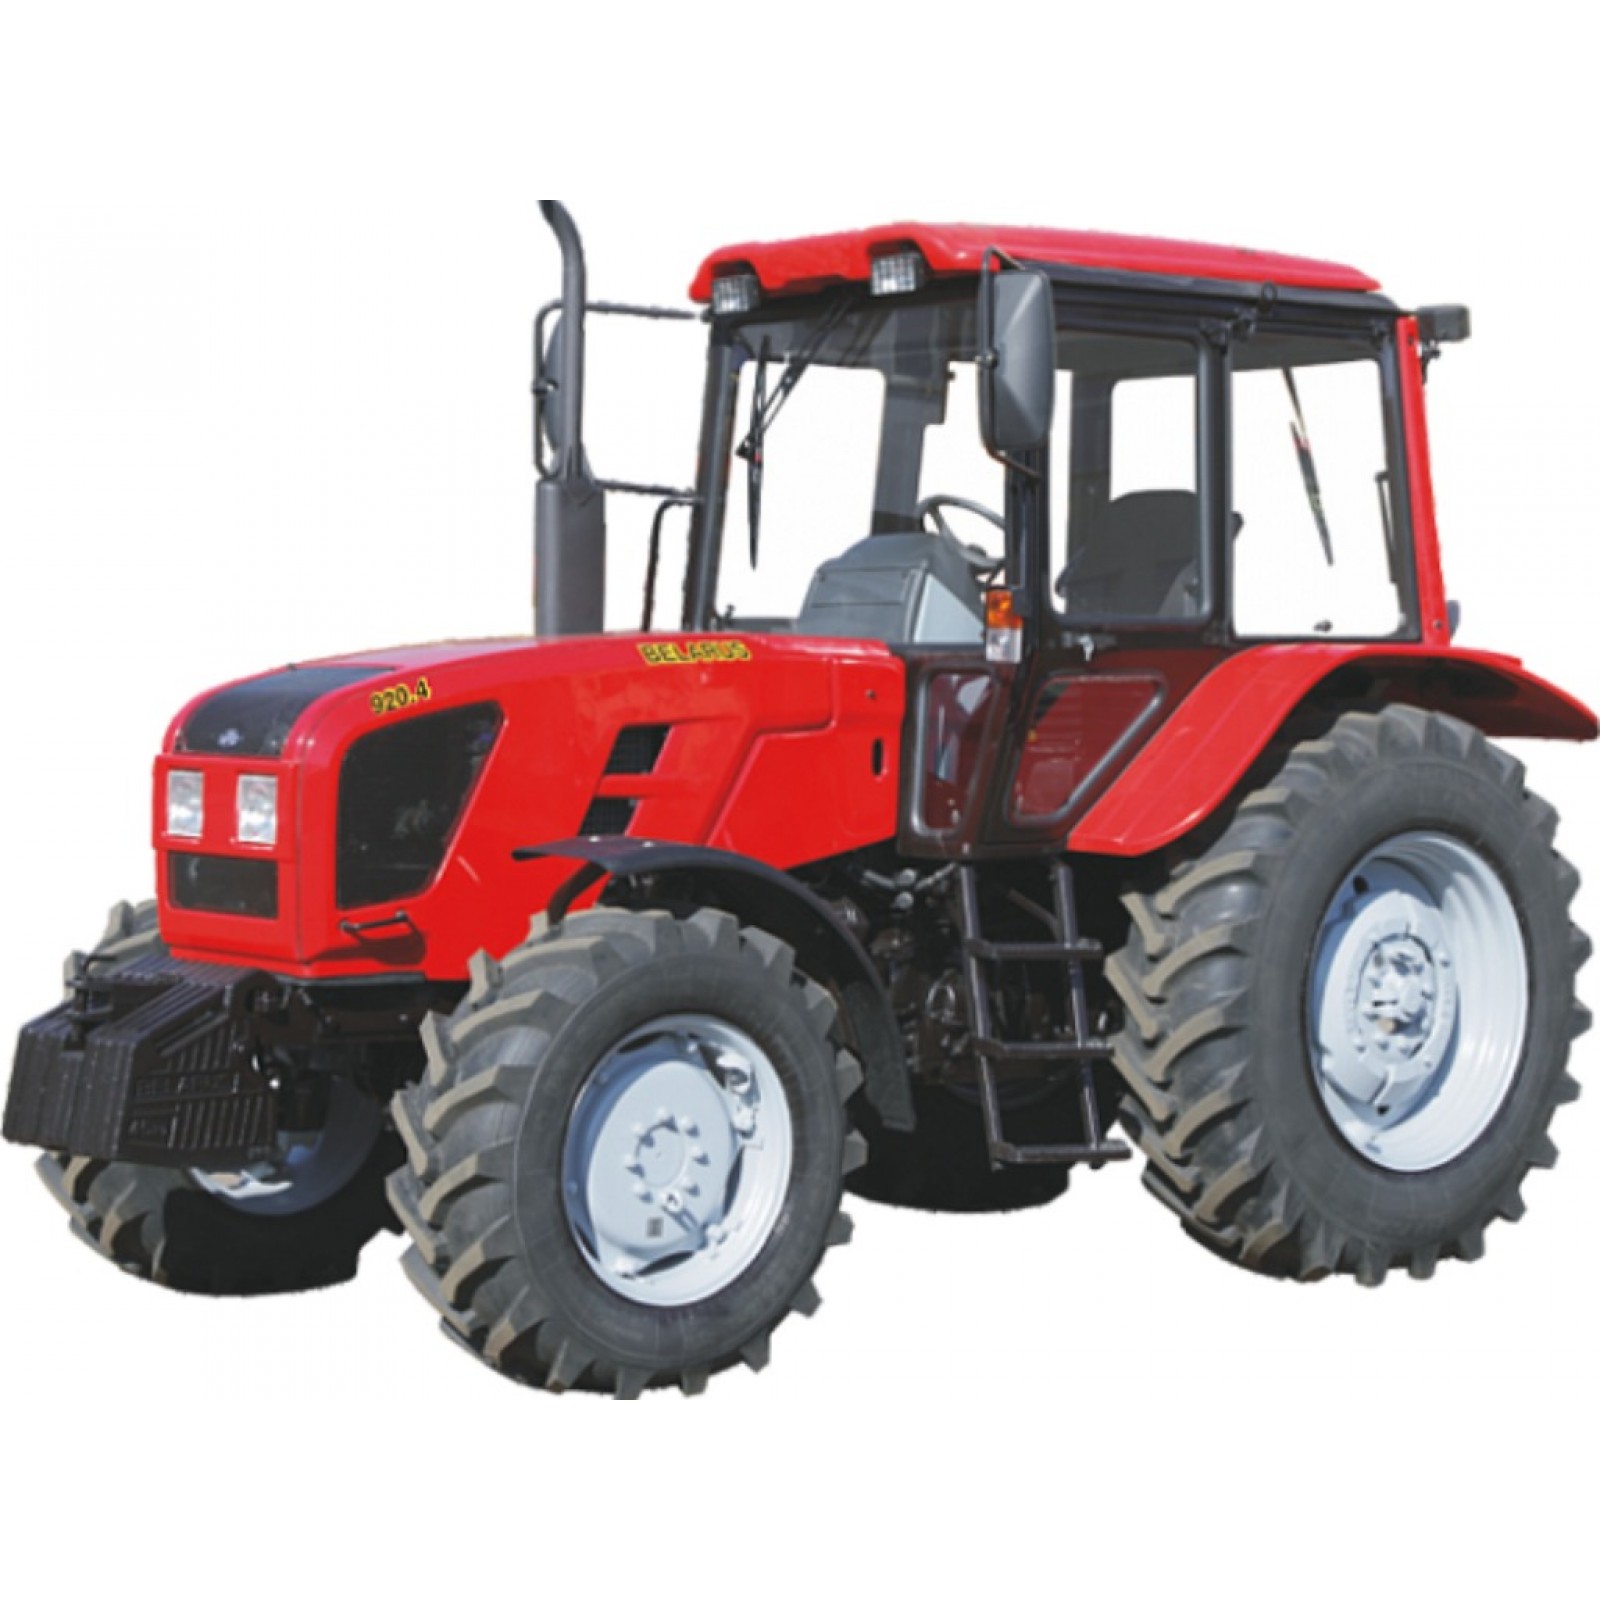 Тракторы BELARUS-900.4-920.4